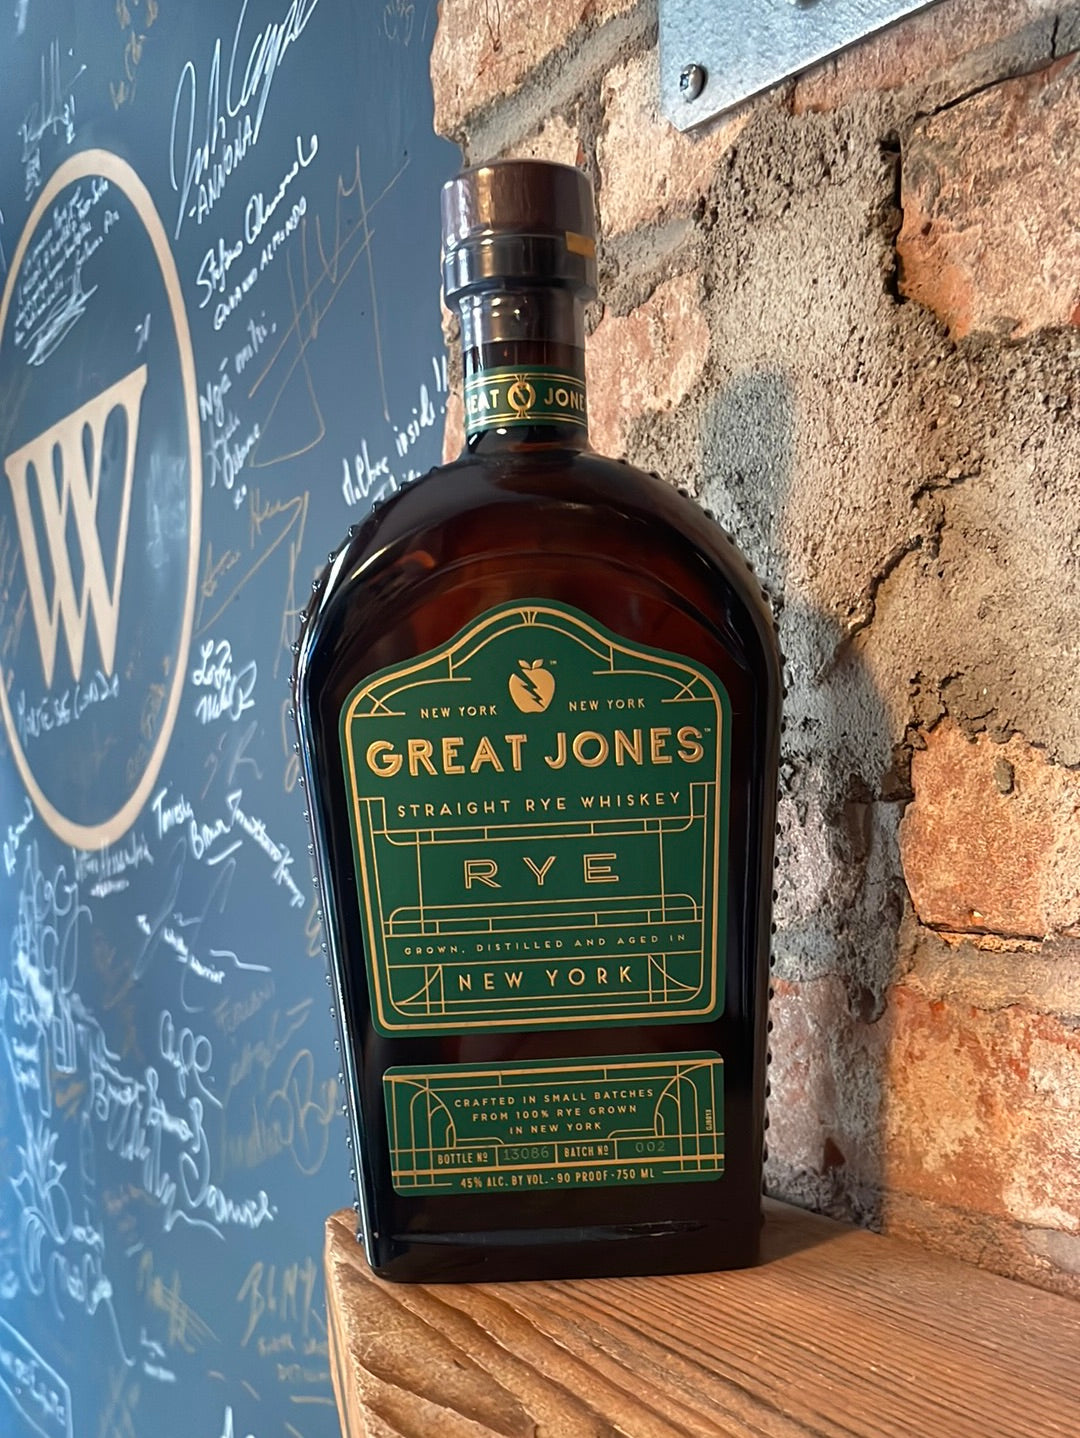 Great Jones New York Straight Rye Whiskey 750ml [NY STATE ONLY]